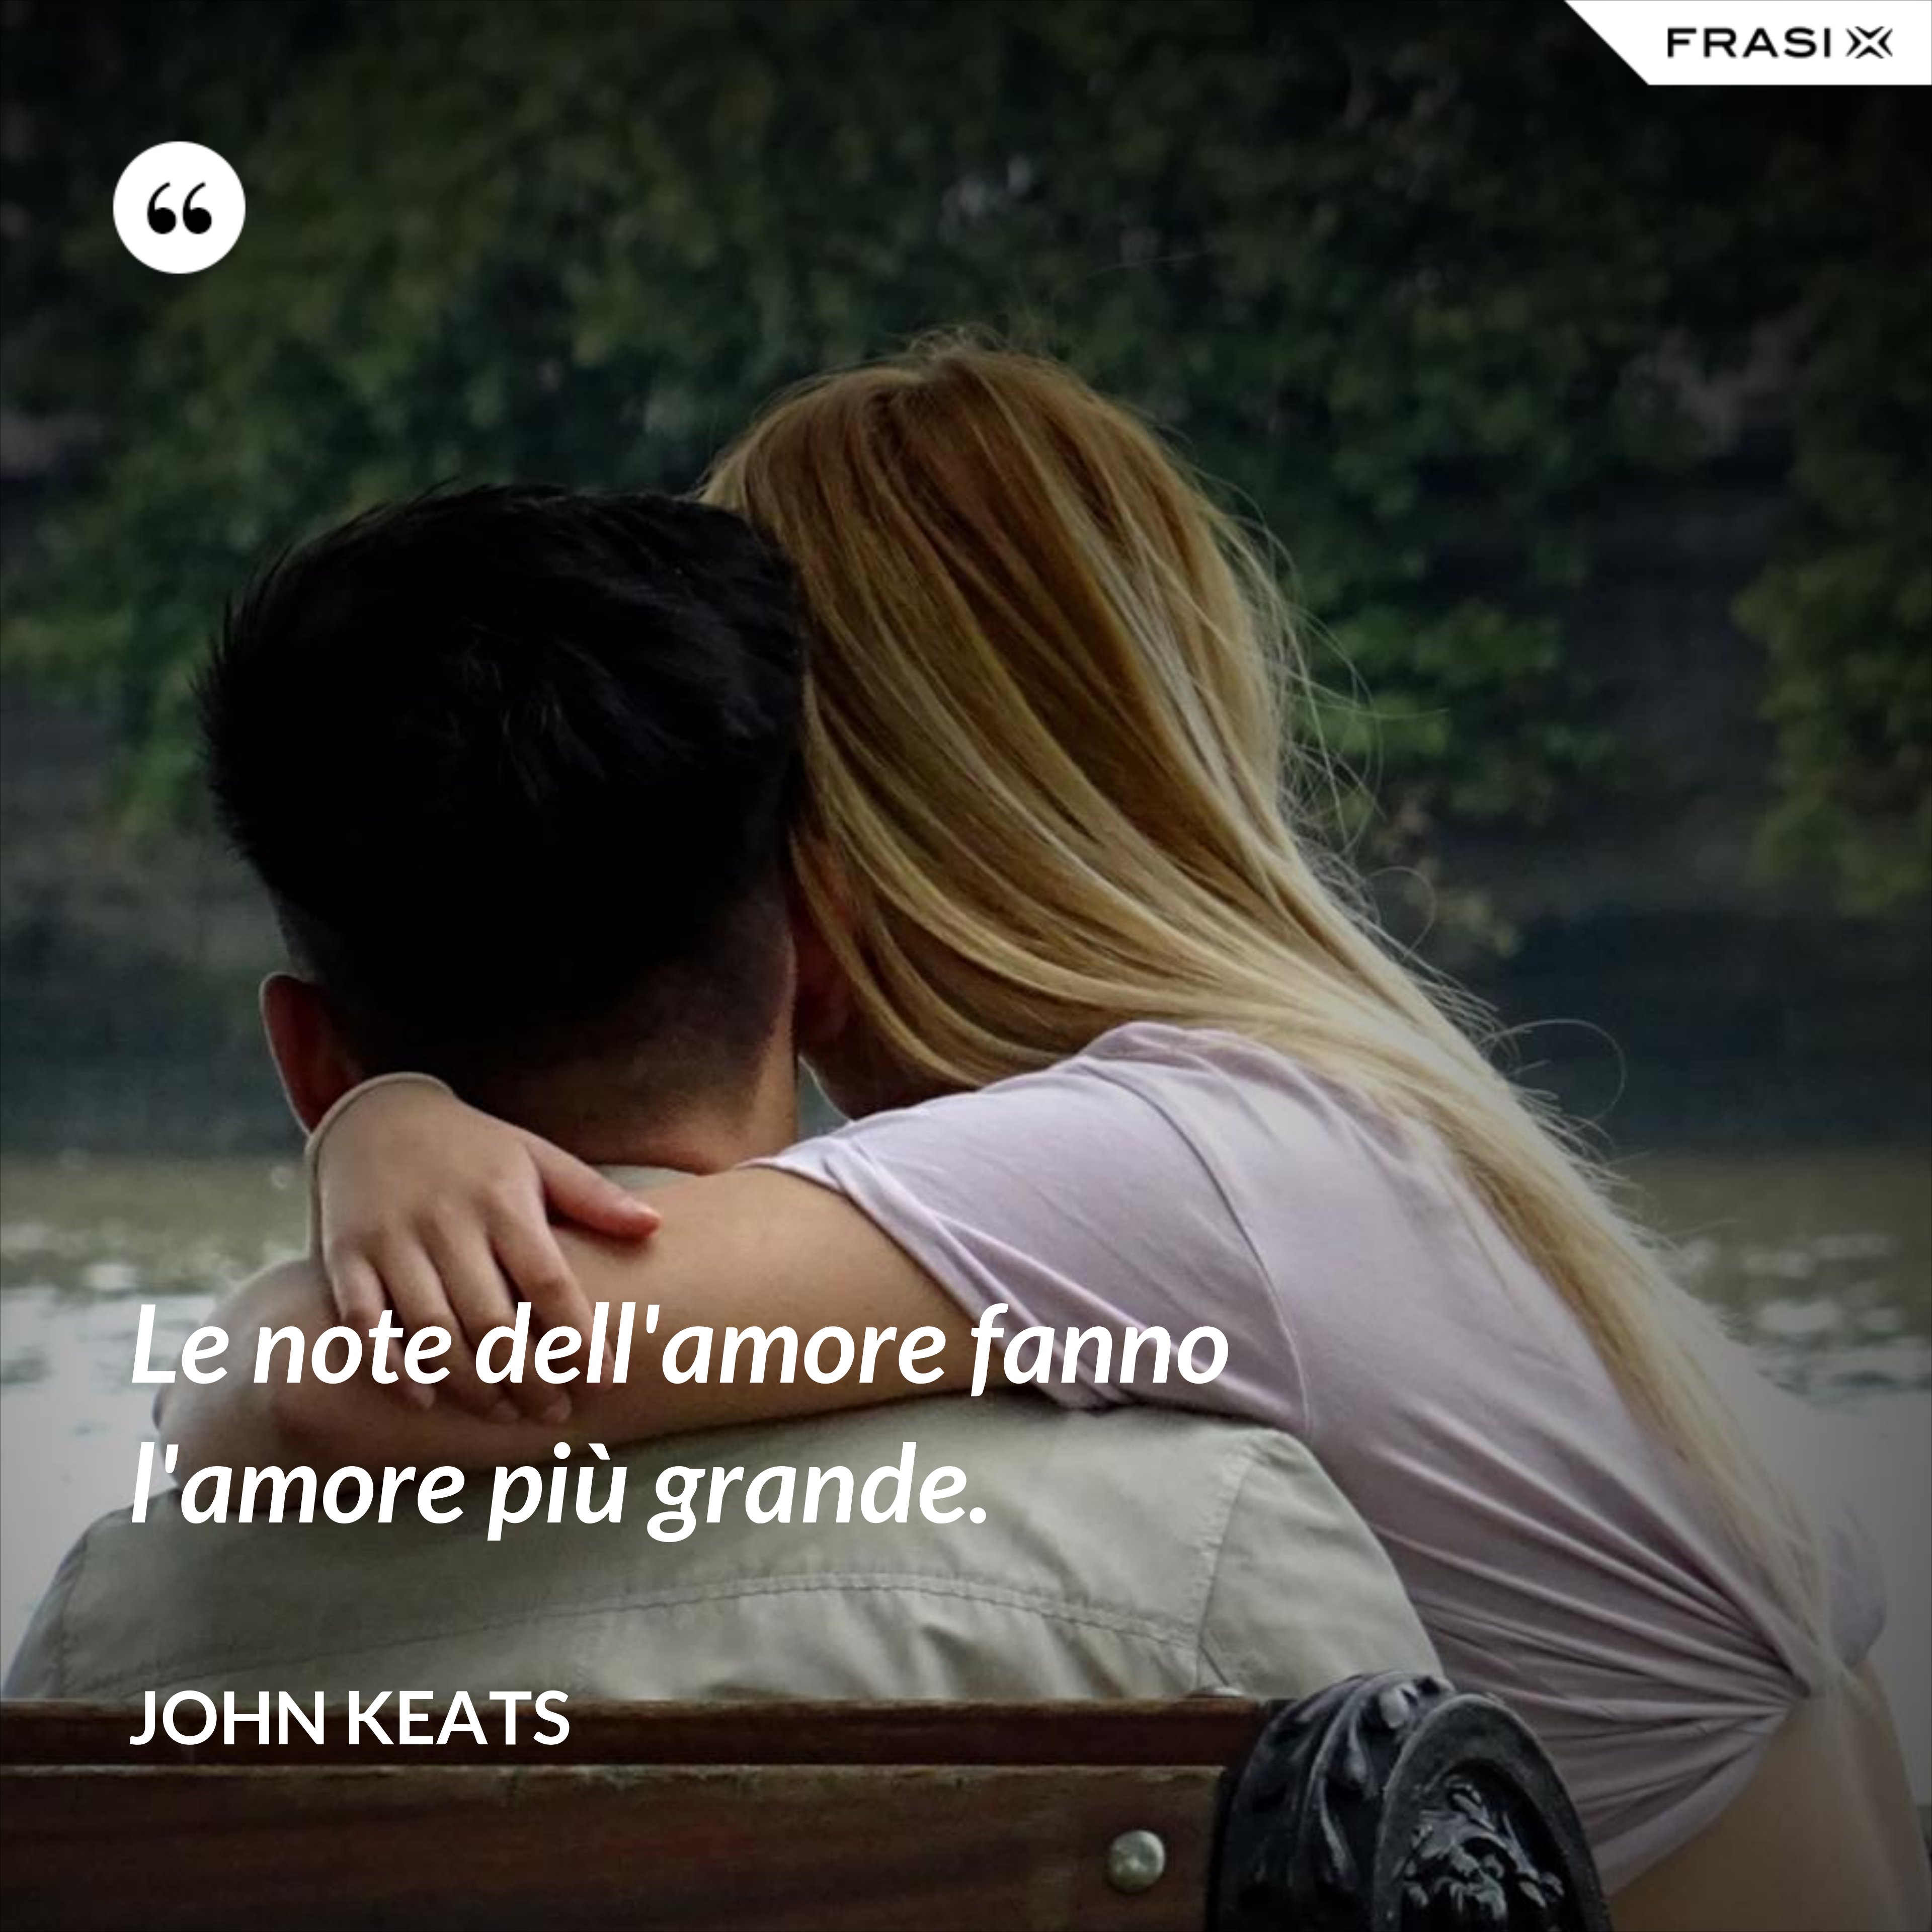 Le note dell'amore fanno l'amore più grande. - John Keats